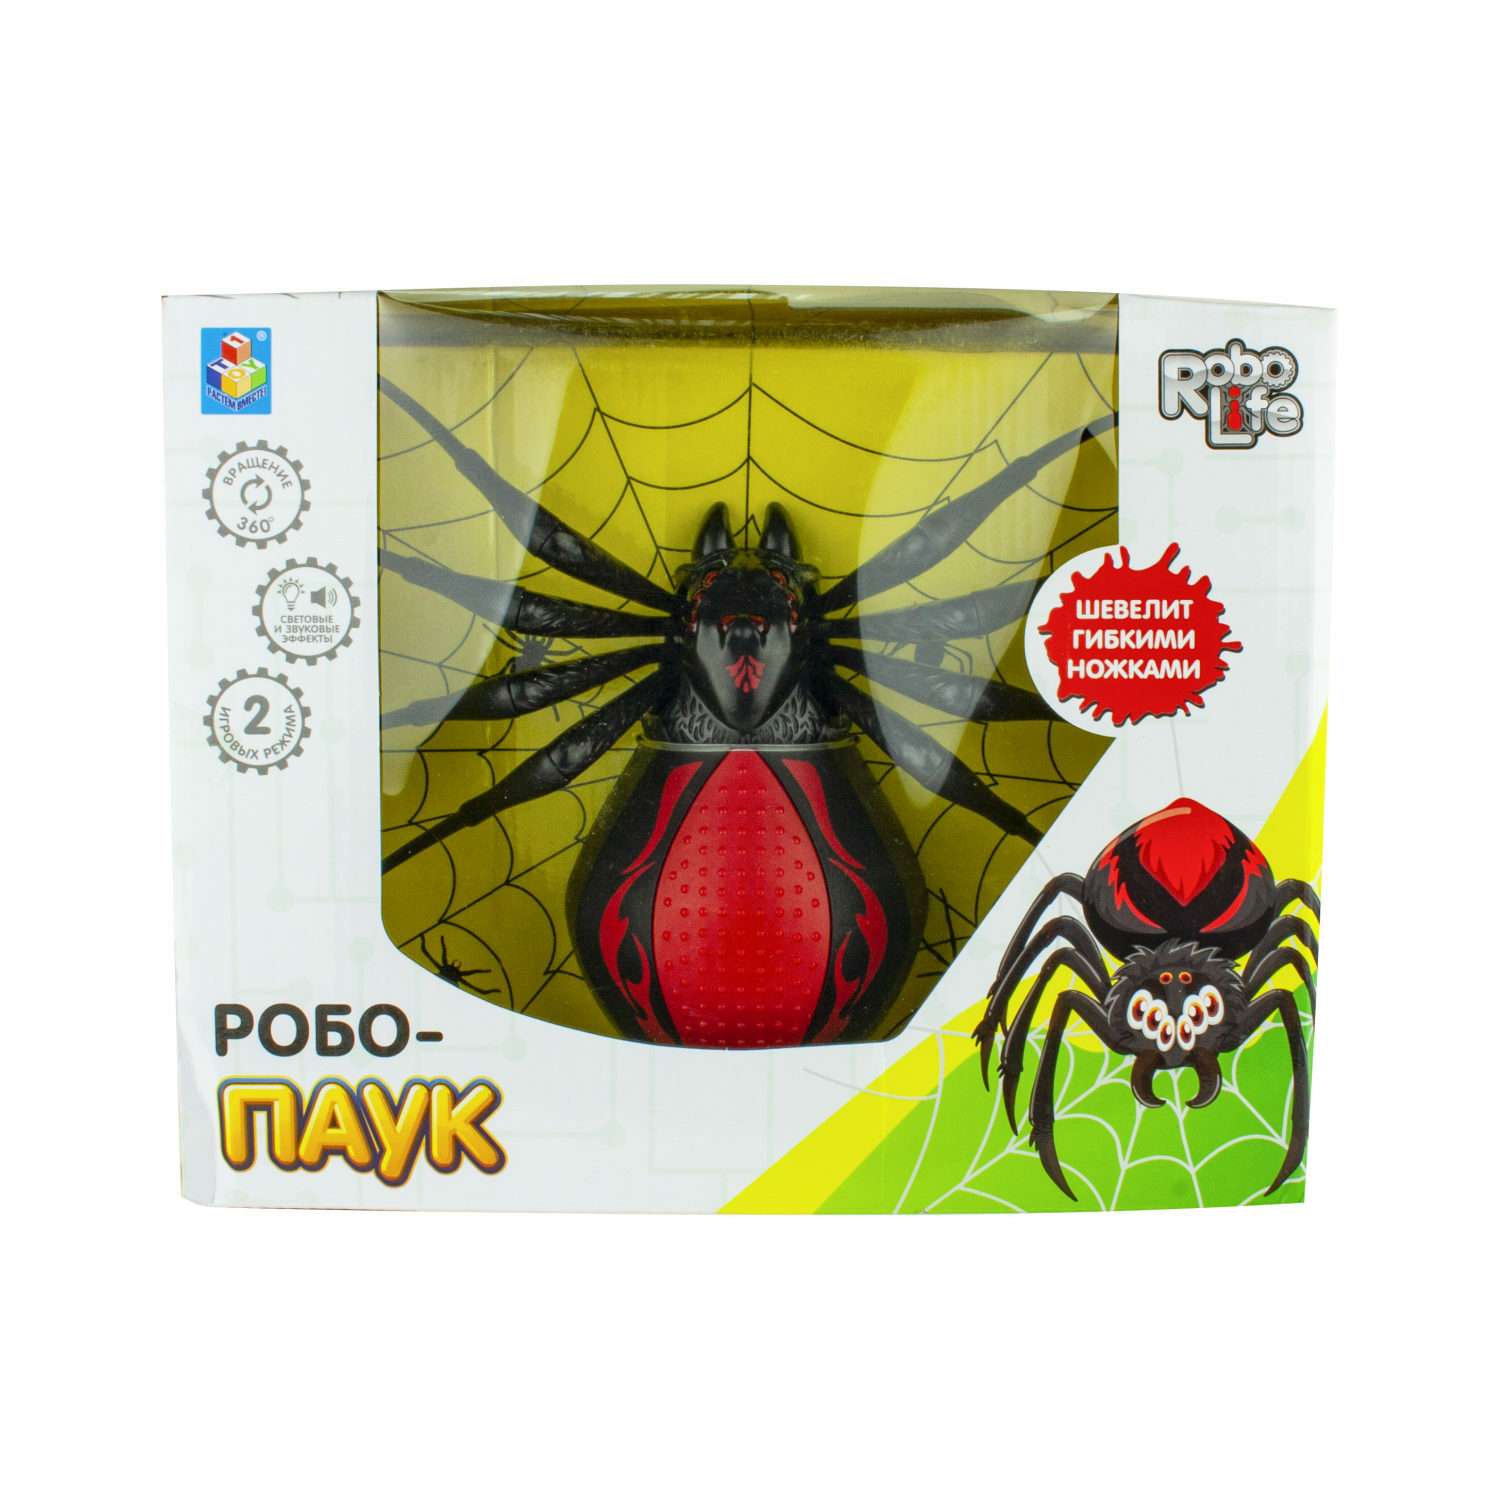 Интерактивная игрушка Robo Life Робо-паук черно- красный со звуковыми световыми и эффектами движения - фото 2